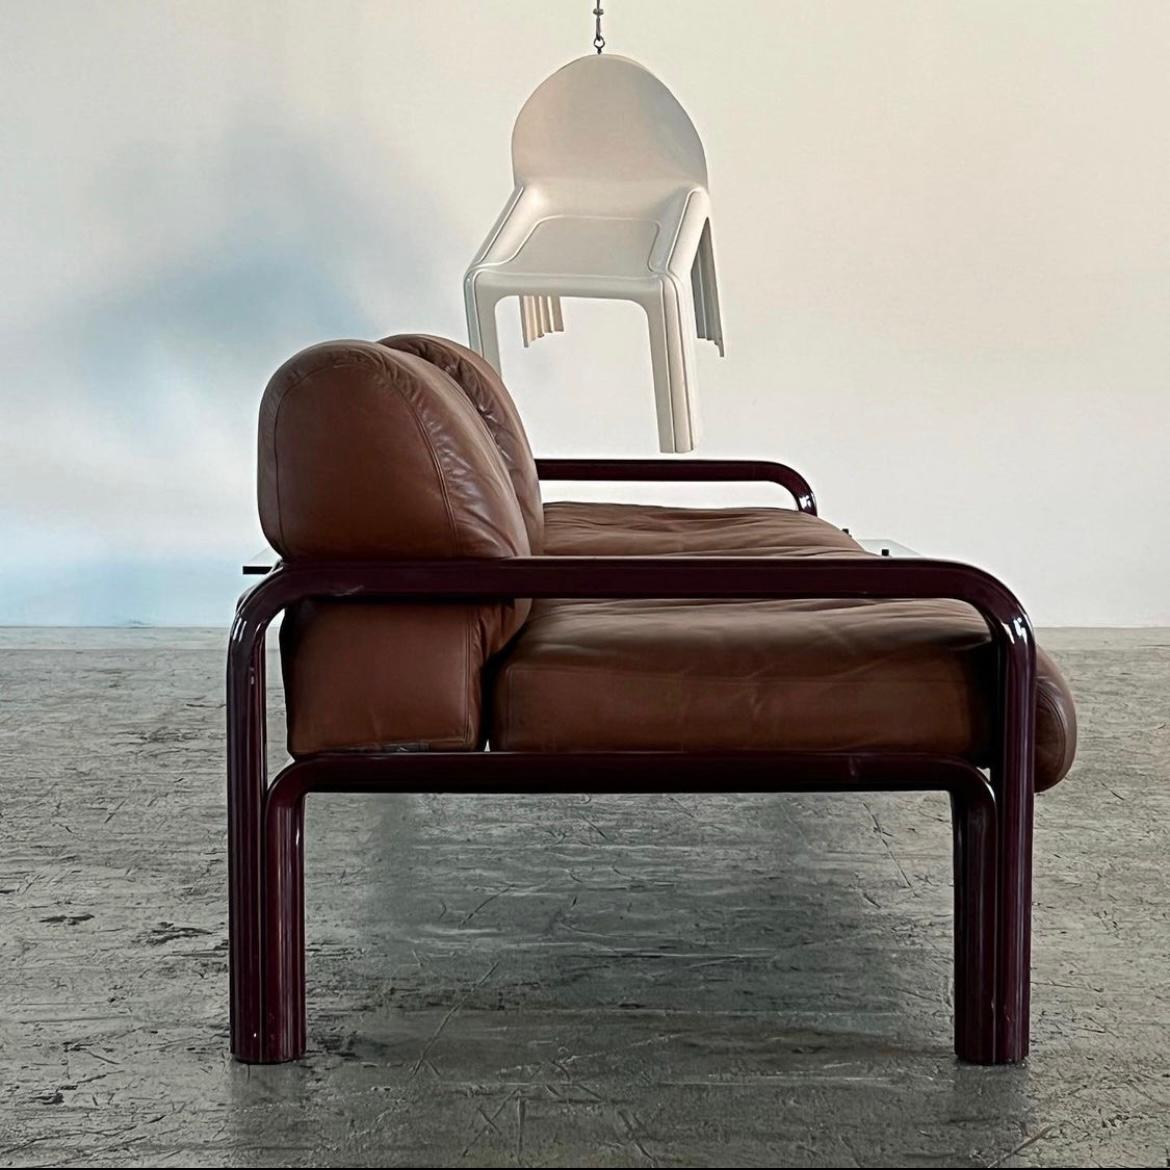 Dreisitzer-Sofa, entworfen von Gae Aulenti im Jahr 1974. Dieses Sofa gehört zu den Loungesitzmöbeln der Collection'S Aulenti, die von Knoll International hergestellt wird.

Aulenti arbeitete erstmals mit Knoll an zwei Ausstellungsräumen zusammen -